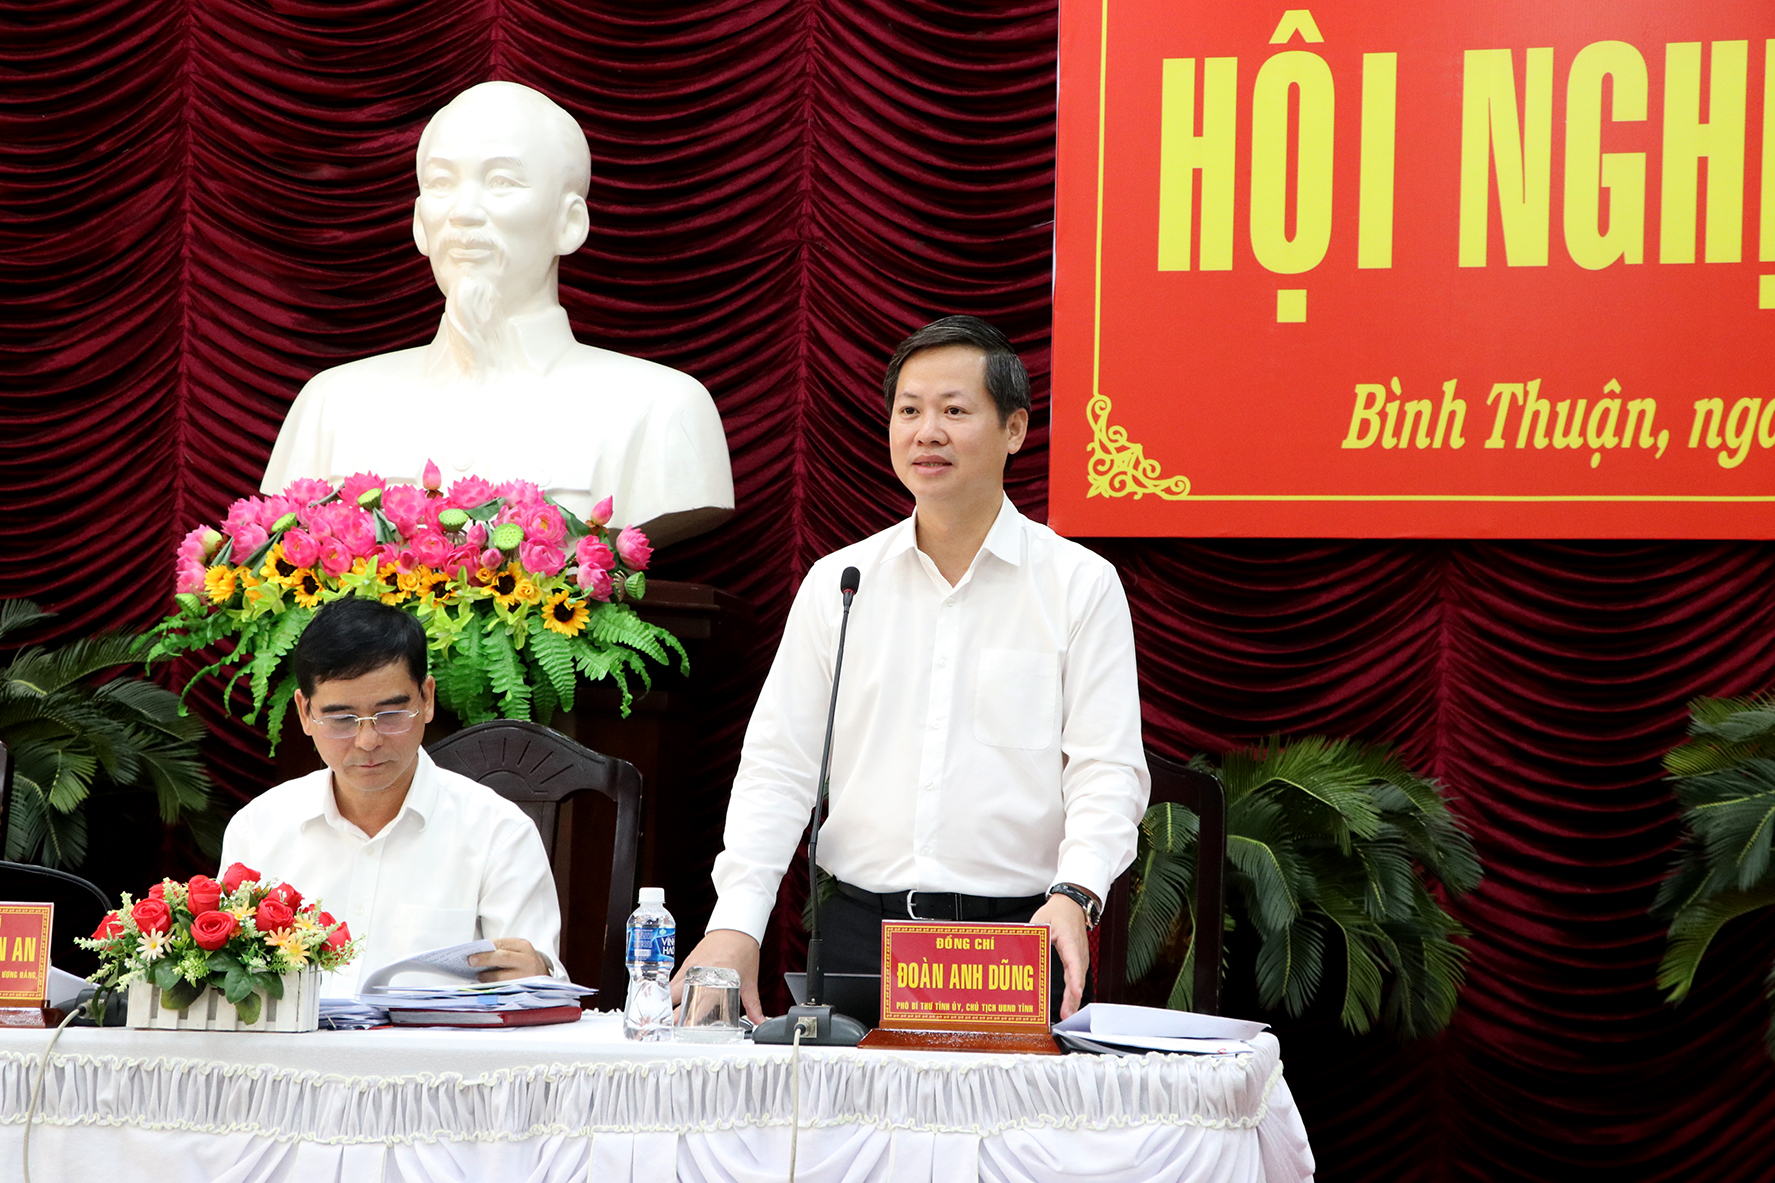 Đoàn Anh Dũng - Phó Bí thư Tỉnh ủy, Chủ tịch UBND tỉnh Bình Thuận